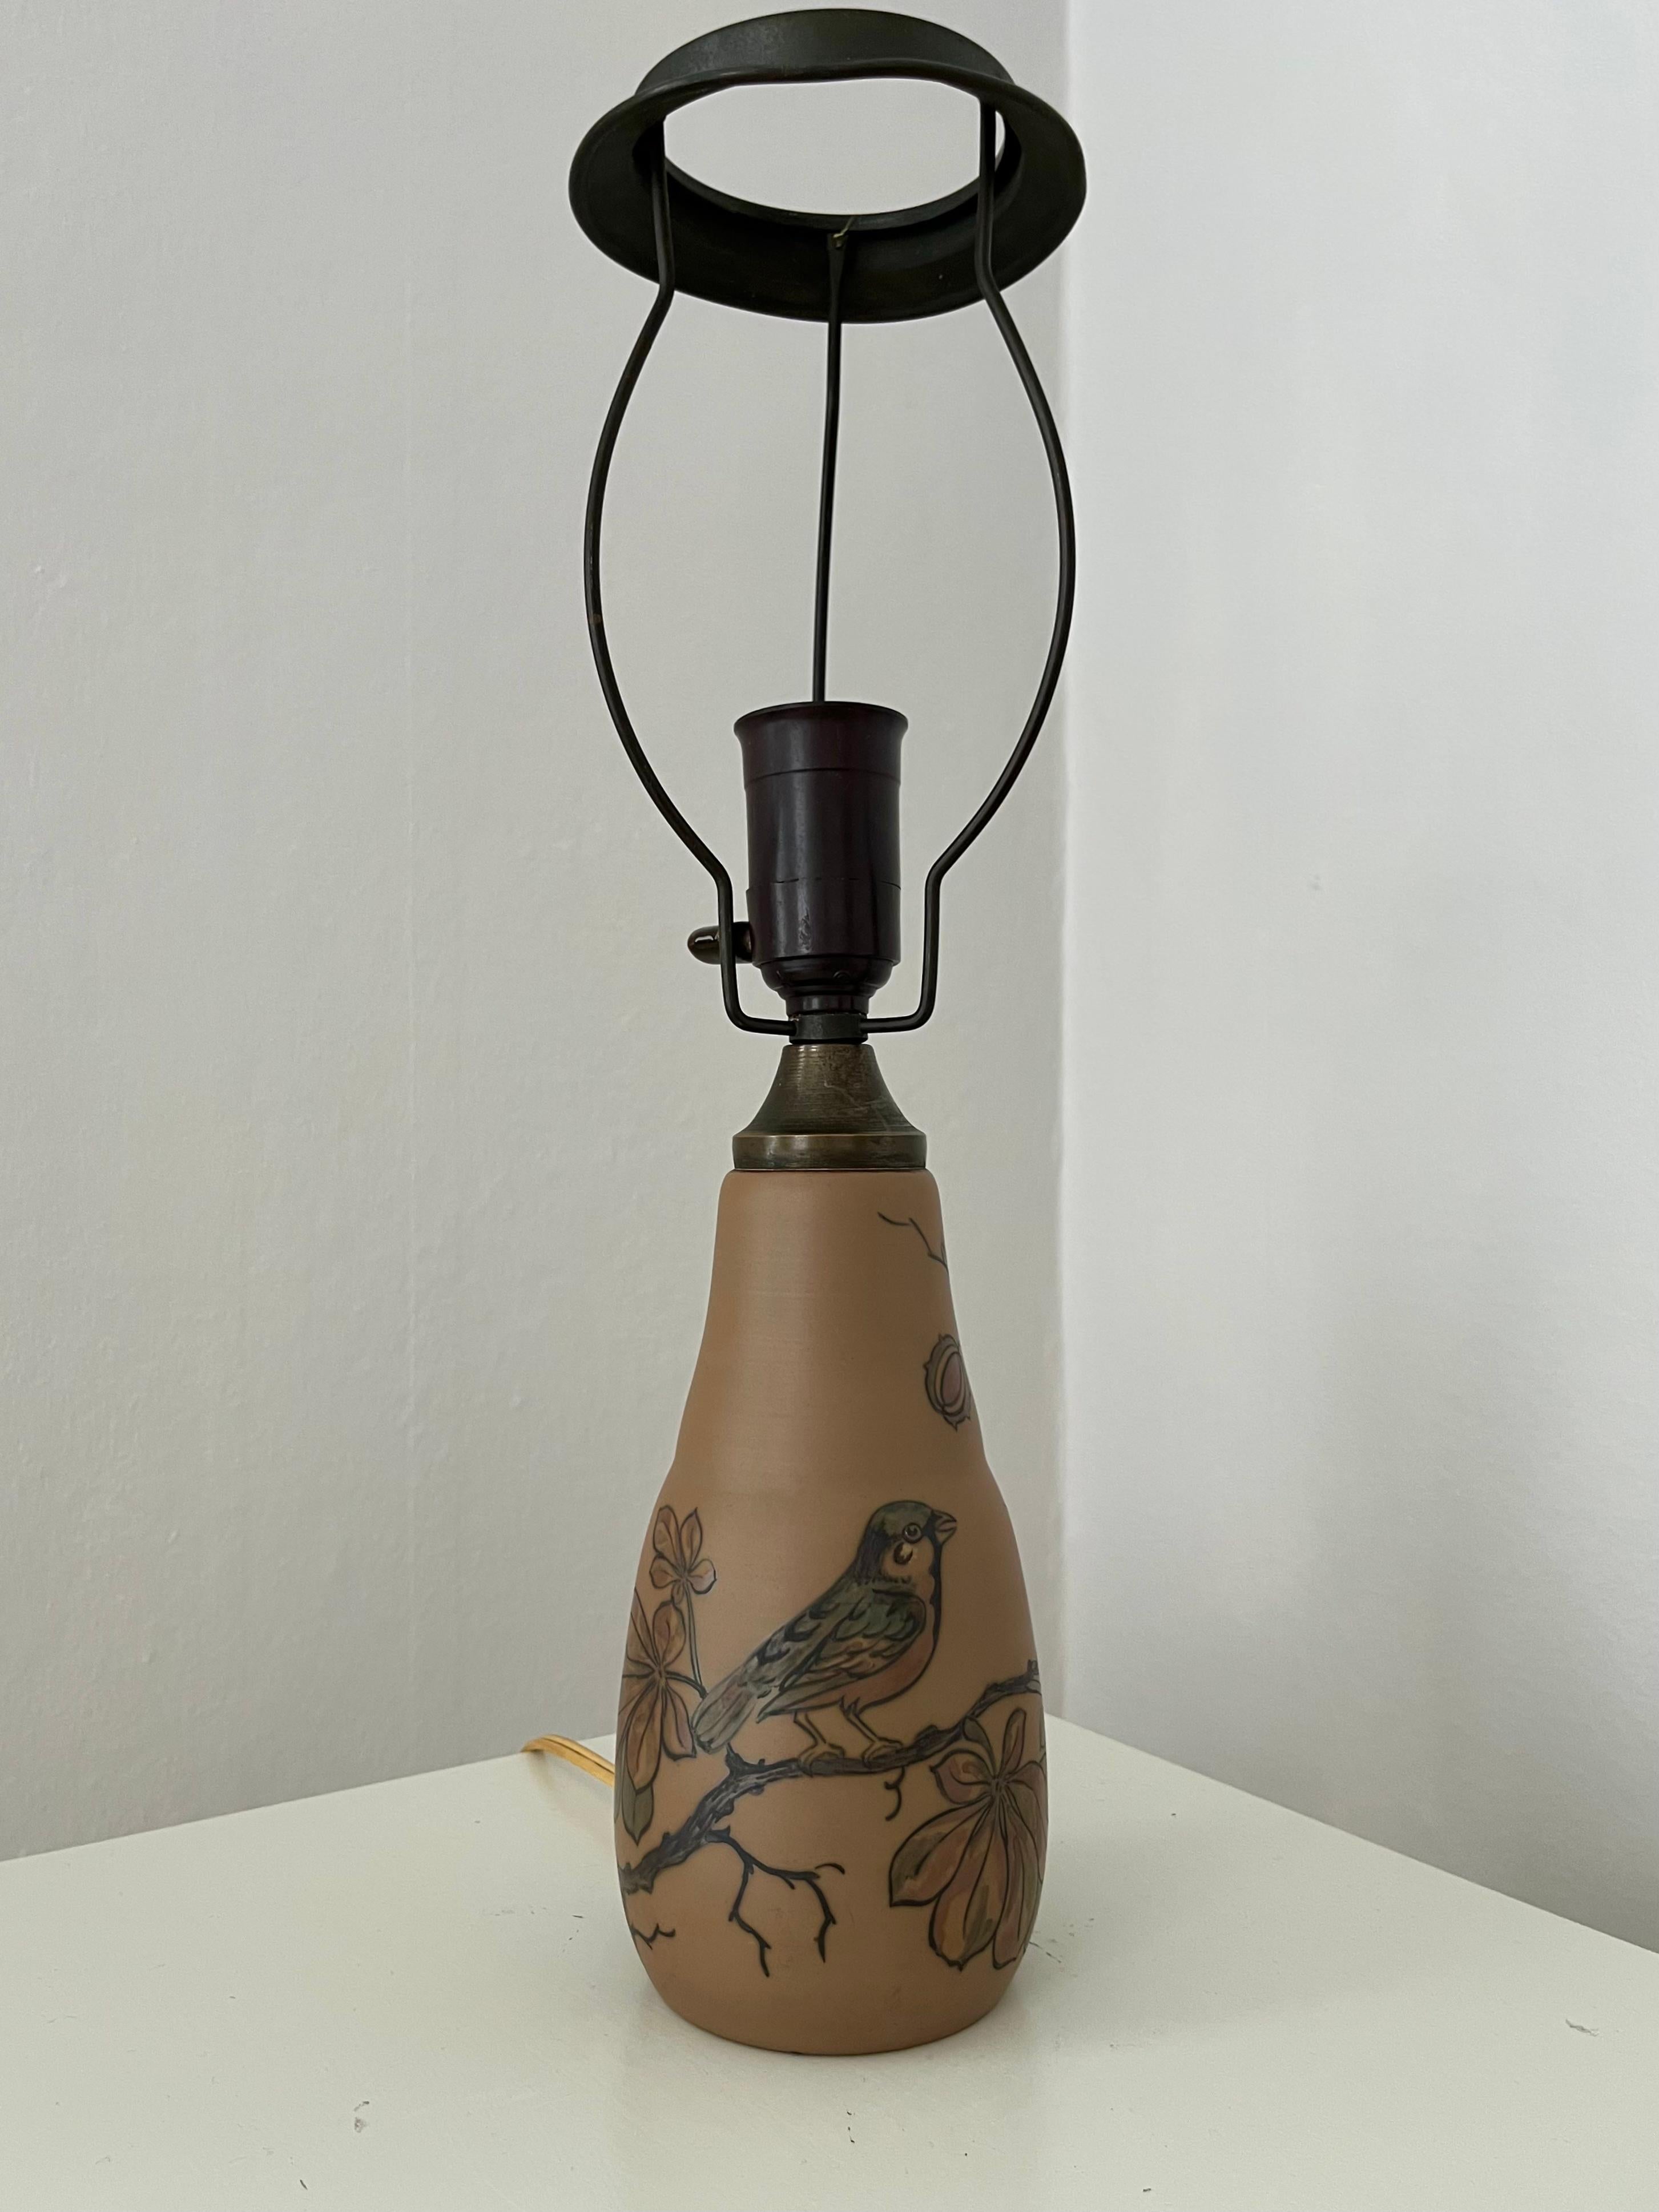 Cette petite lampe de table Art nouveau en céramique danoise est décorée à la main. Elle a été fabriquée par l'usine de céramique I.L.A., située sur l'île danoise de Bornholm, célèbre pour ses remarquables ateliers de céramique. Décoré à la main